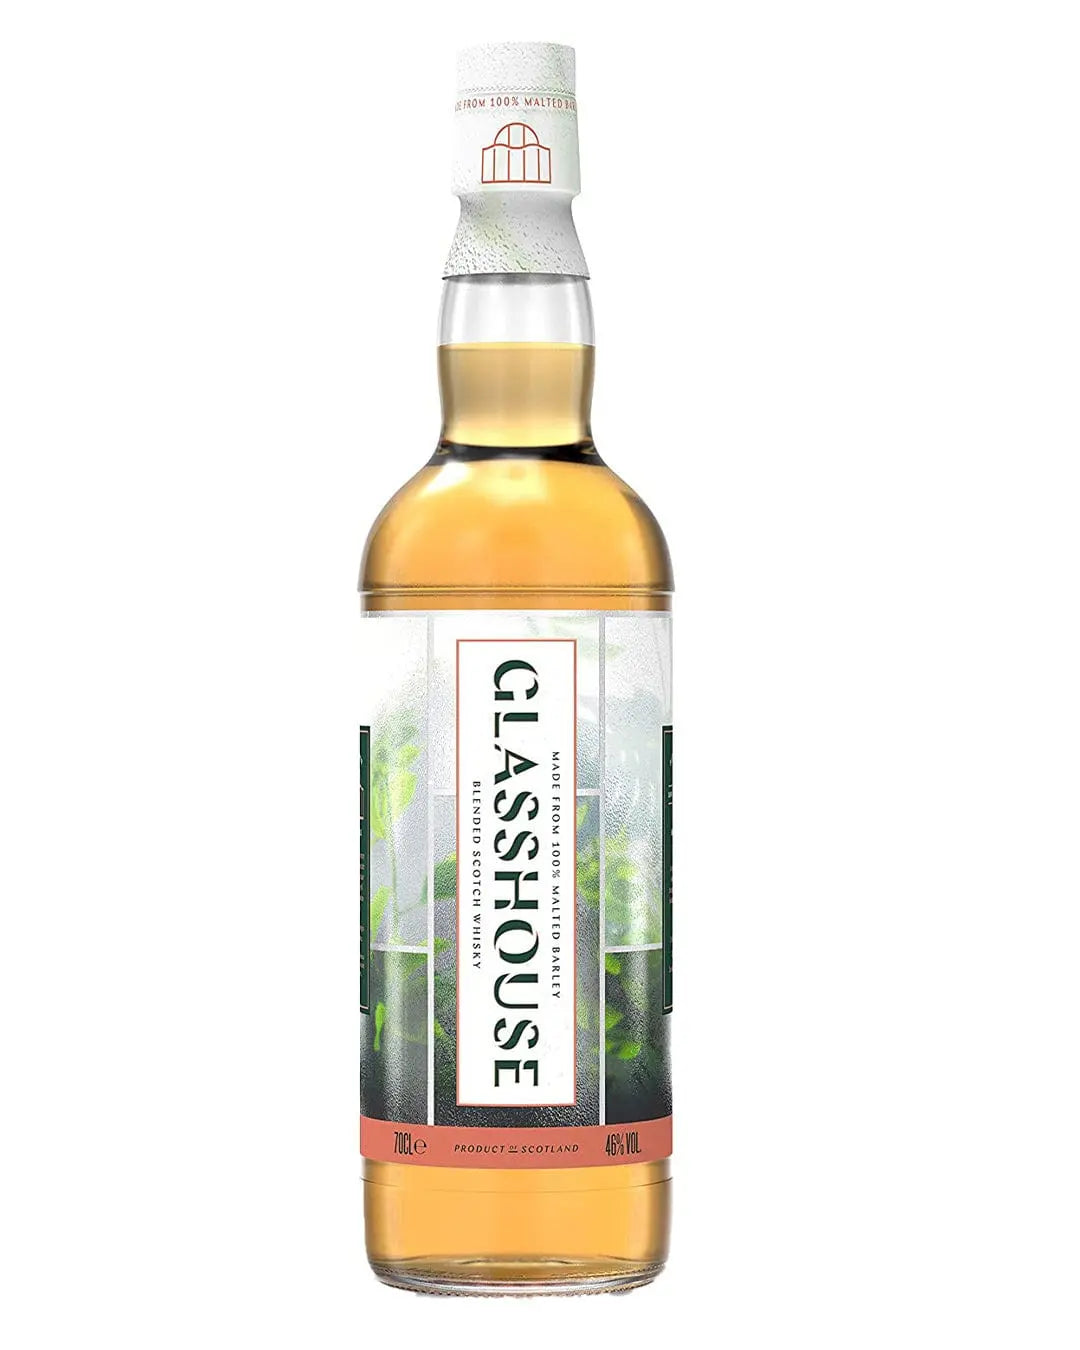 Glasshouse Blended Scotch Whisky, 70 cl Whisky